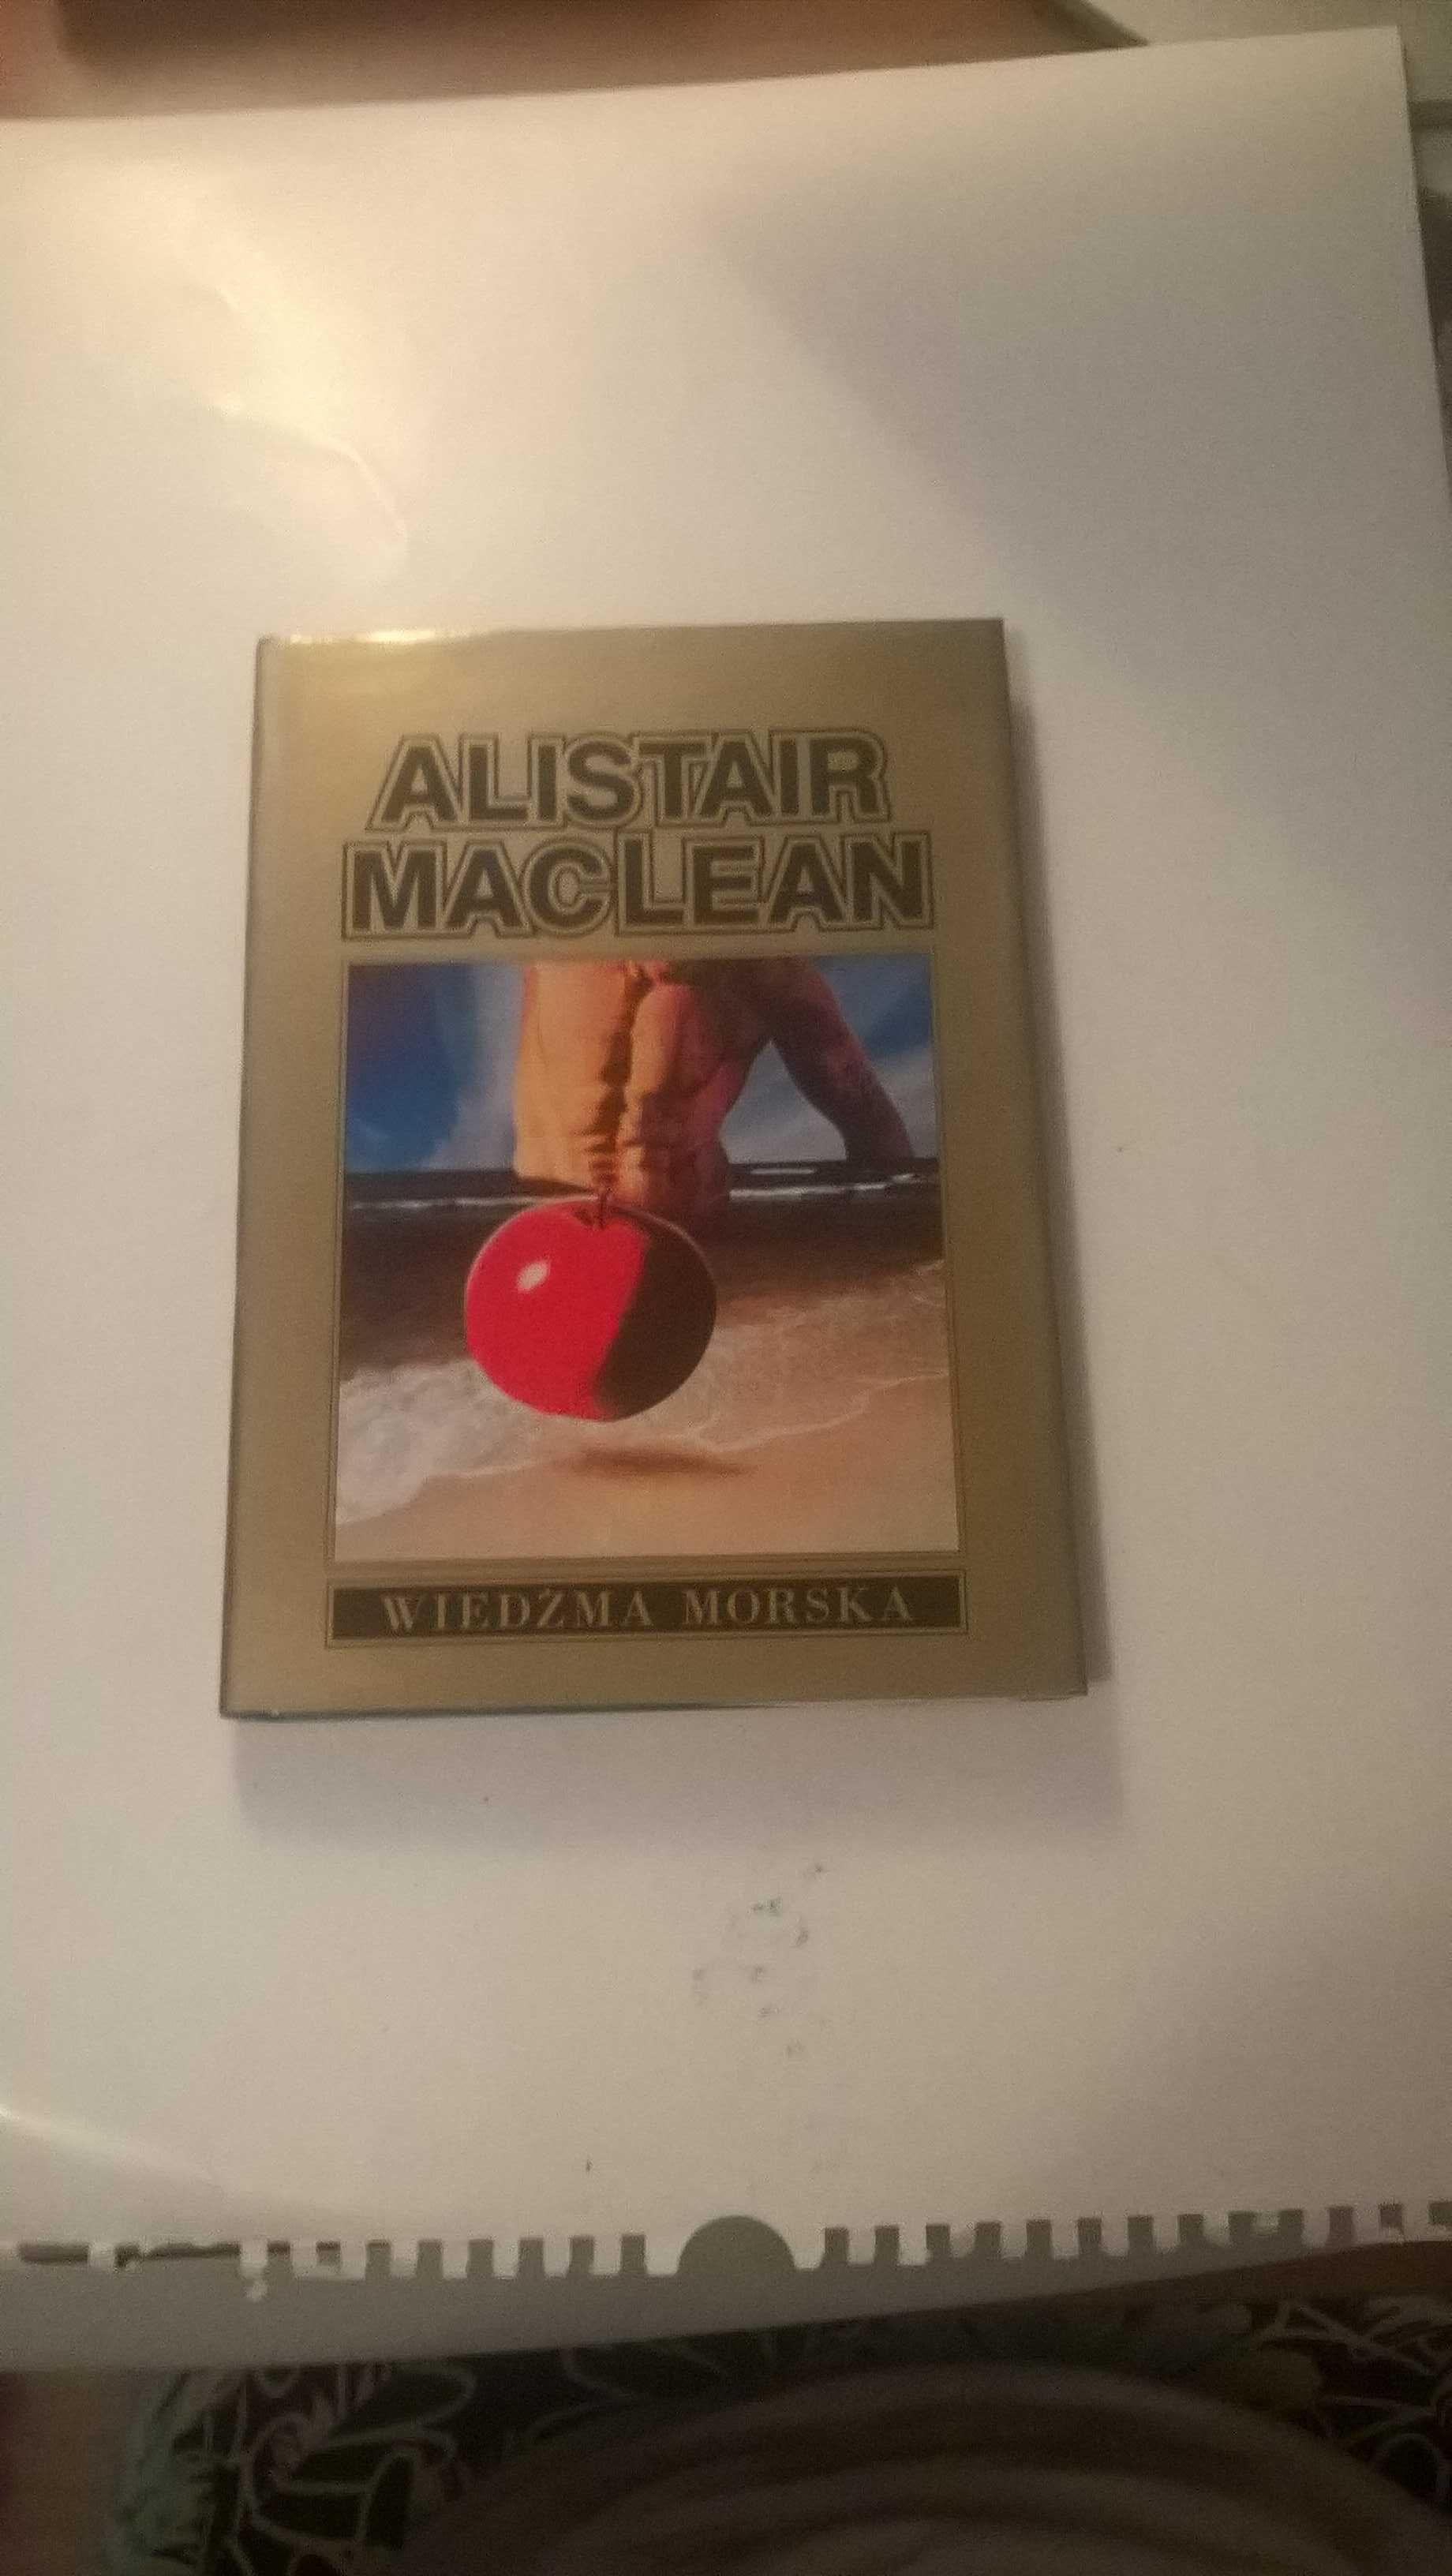 Wiedźma morska
Alistair MacLean